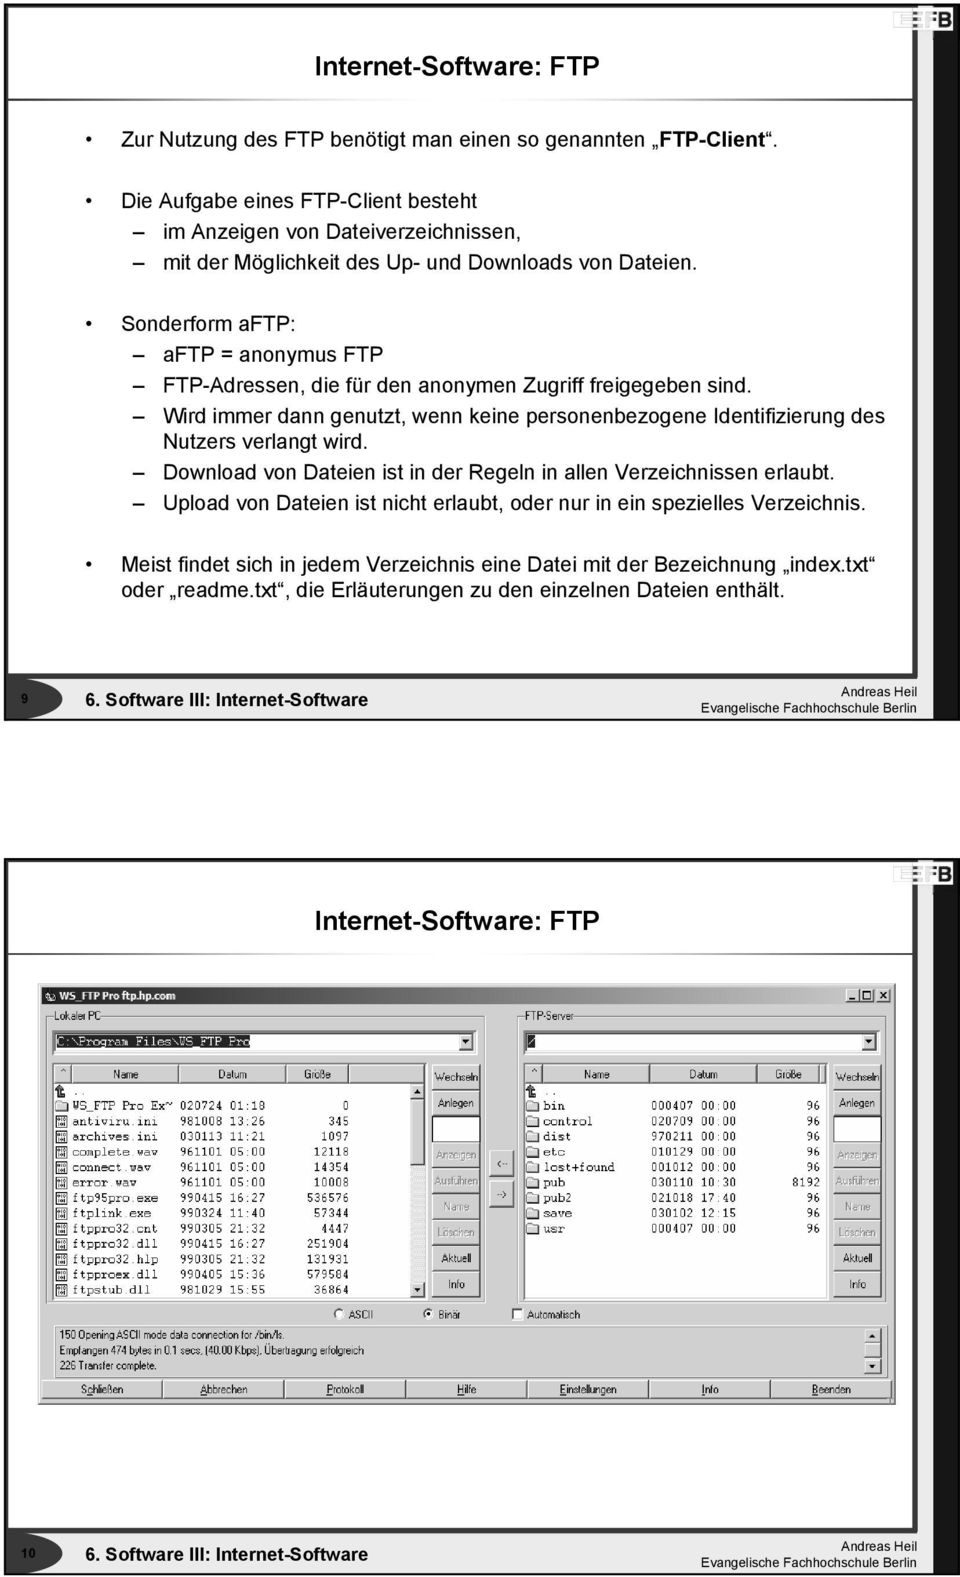 Sonderform aftp: aftp = anonymus FTP FTP-Adressen, die für den anonymen Zugriff freigegeben sind.